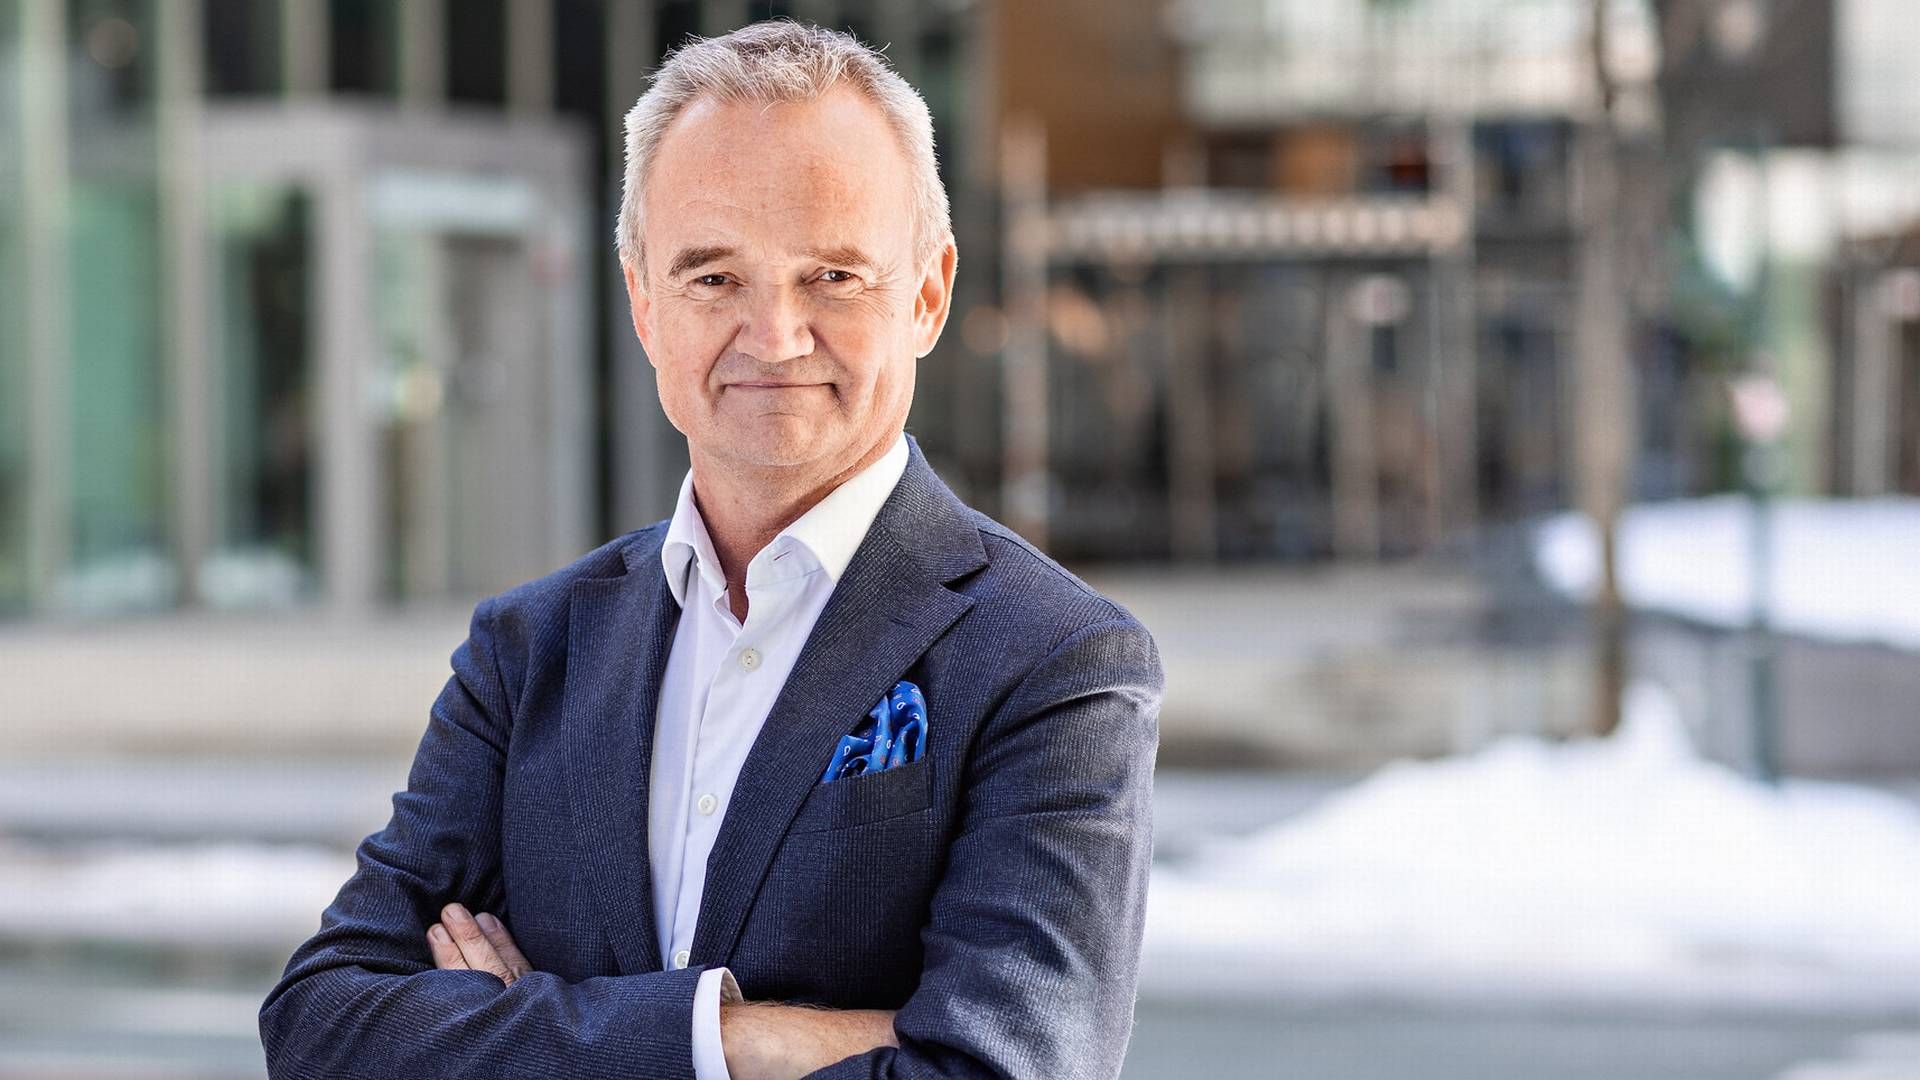 VEMODIG: – Det er vemodig at Danske Bank trekker seg ut av Norge, sier konsernsjef Jan Frode Janson i Sparebank 1 SMN.